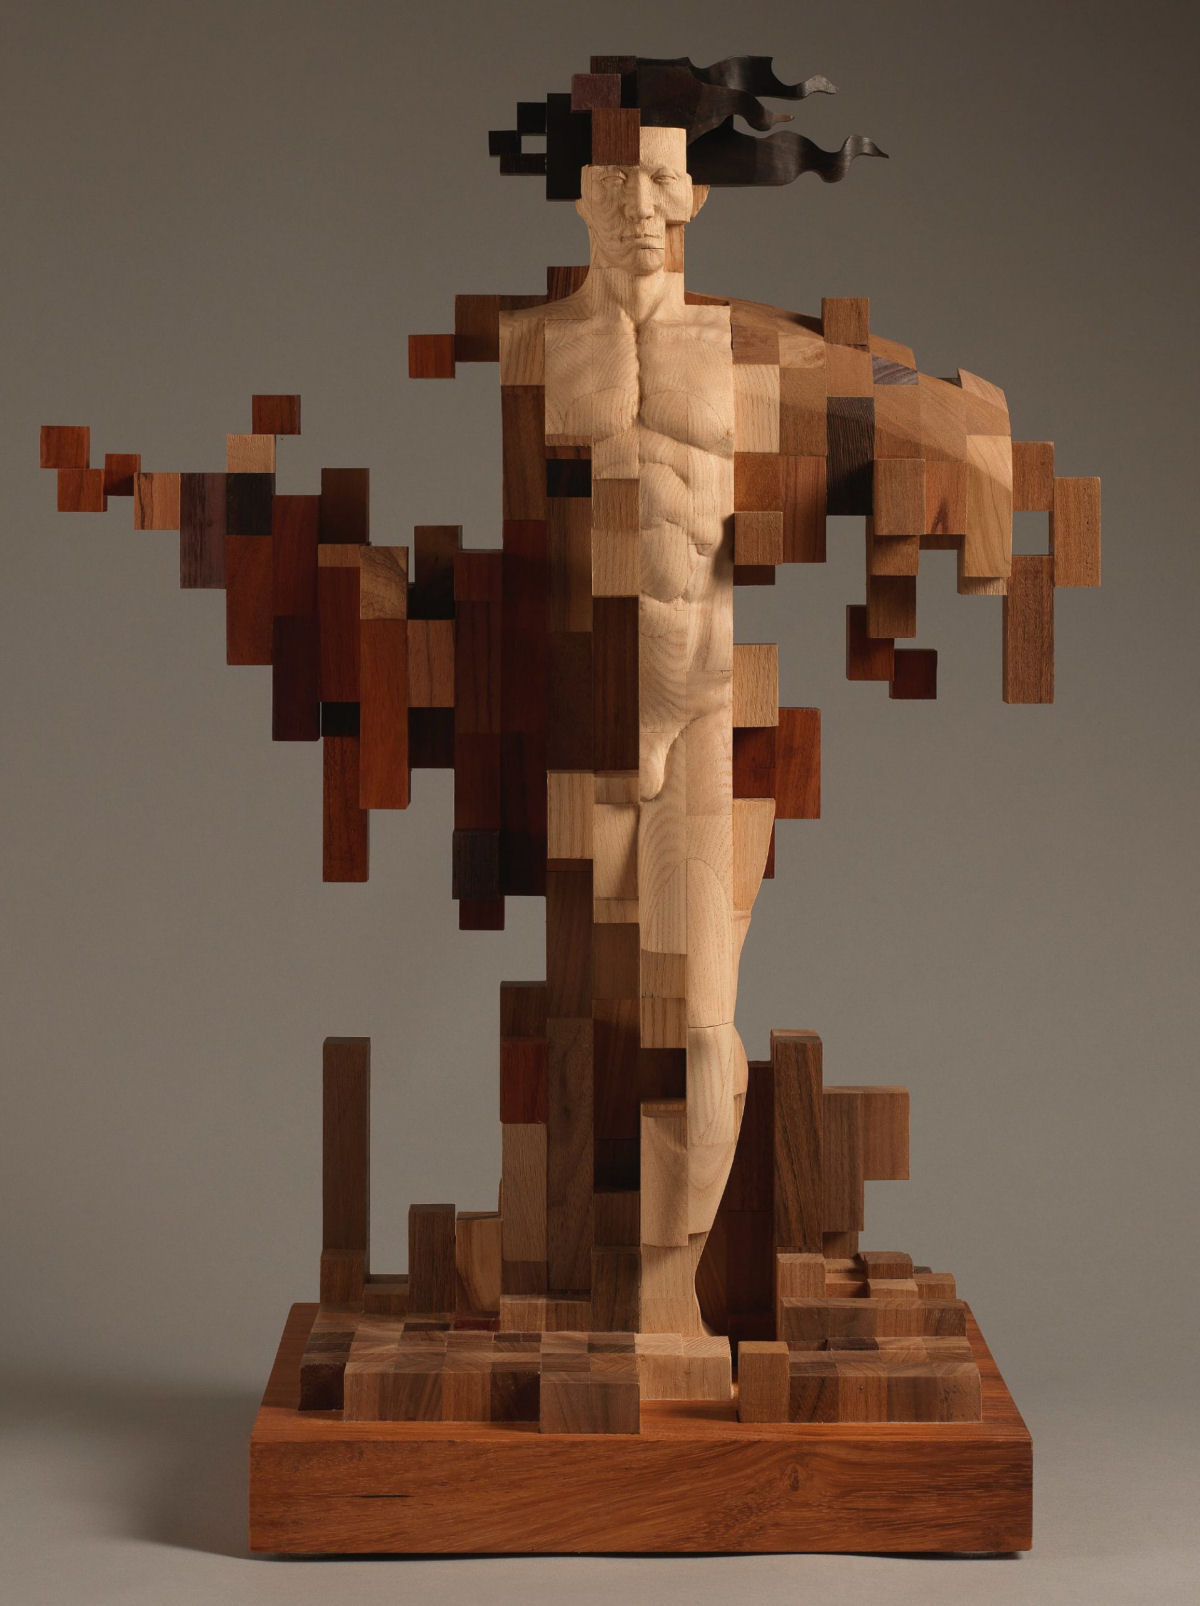 Esculturas figurativas parecem se fragmentar com pixels de madeira 02